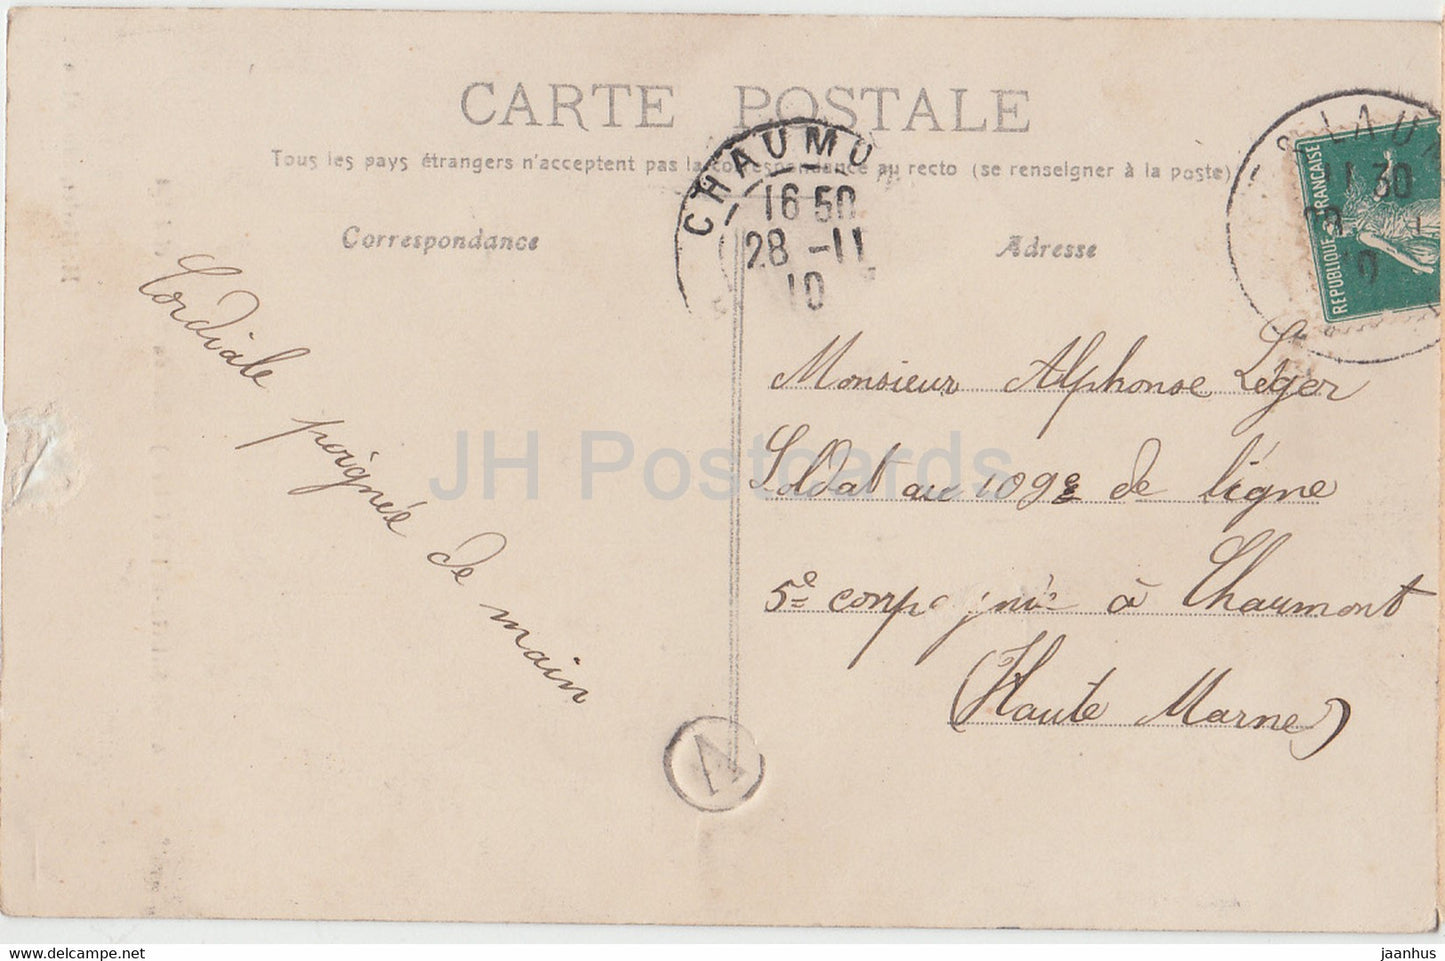 Alise Sainte Reine - Rue du Miroir - core est  - old postcard - 1910 - France - used